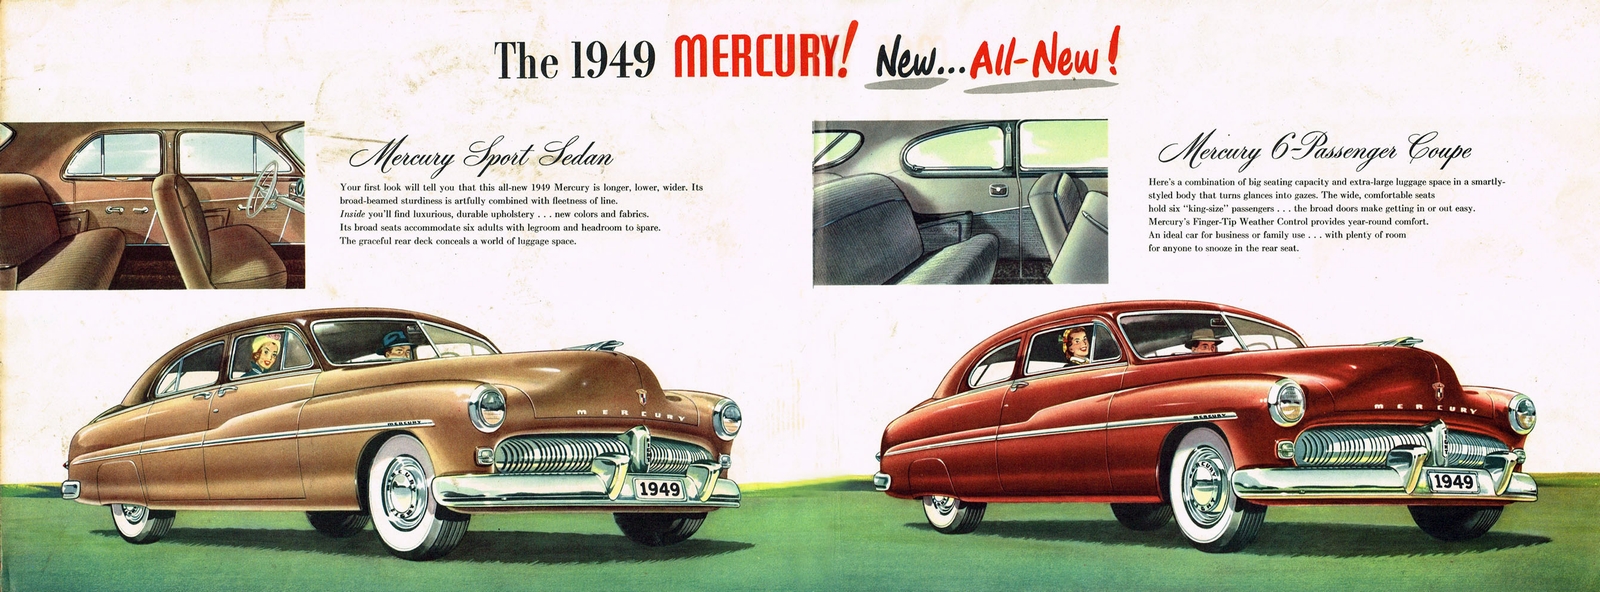 n_1949 Mercury-02-03.jpg